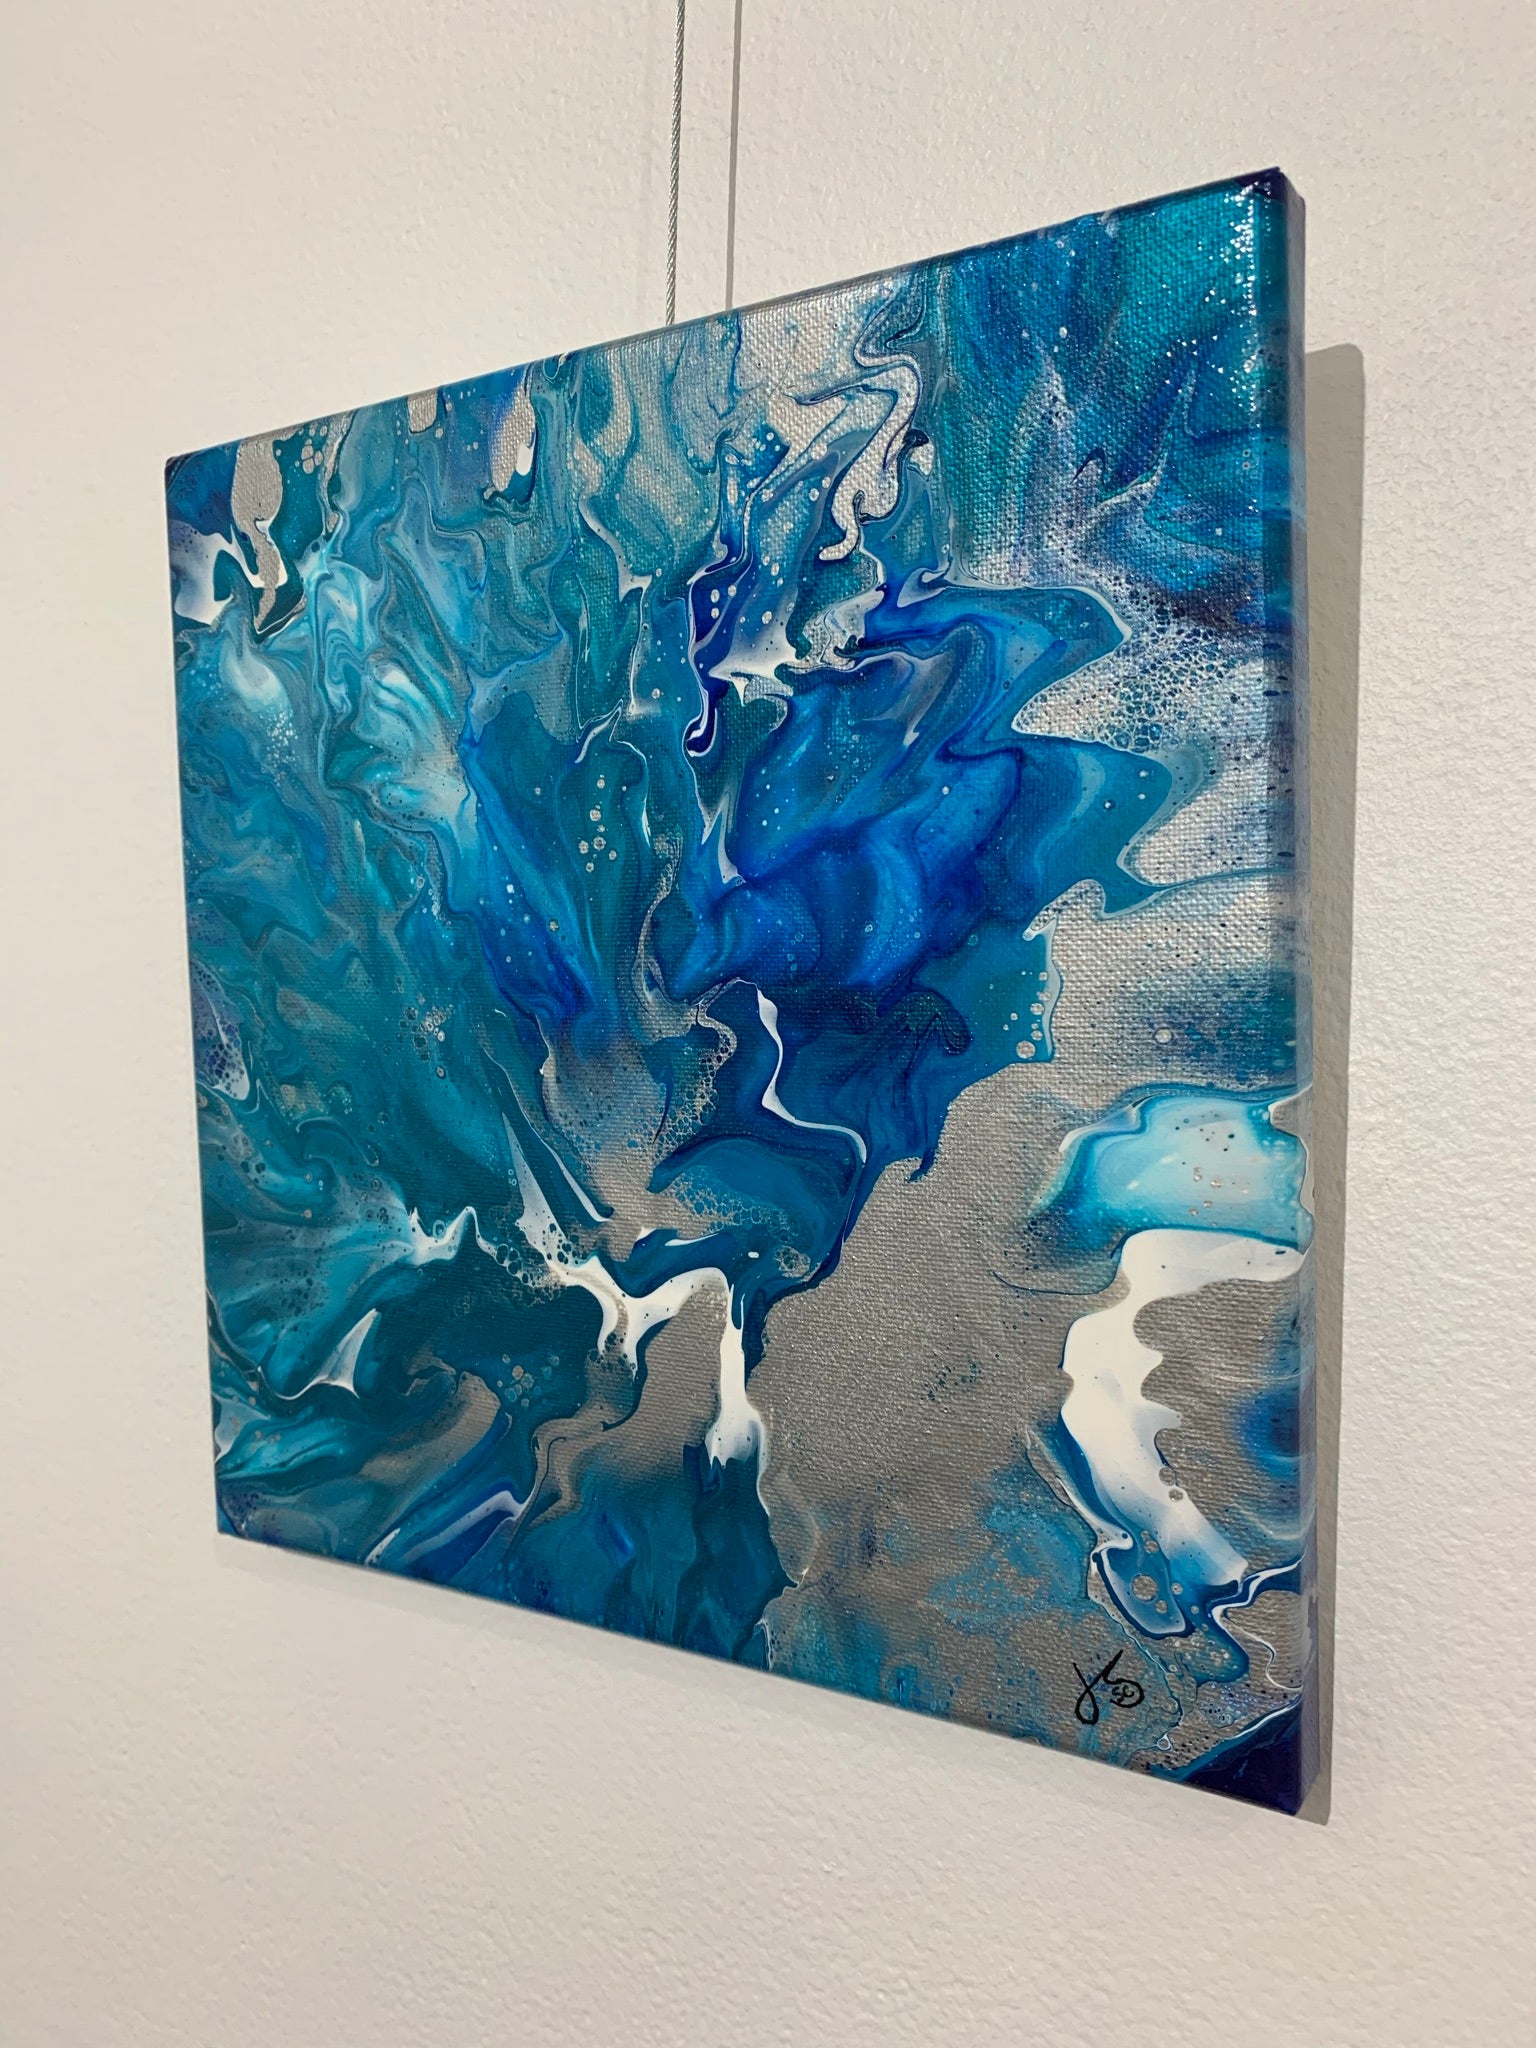 Artwork - Blue Fire - 10x10